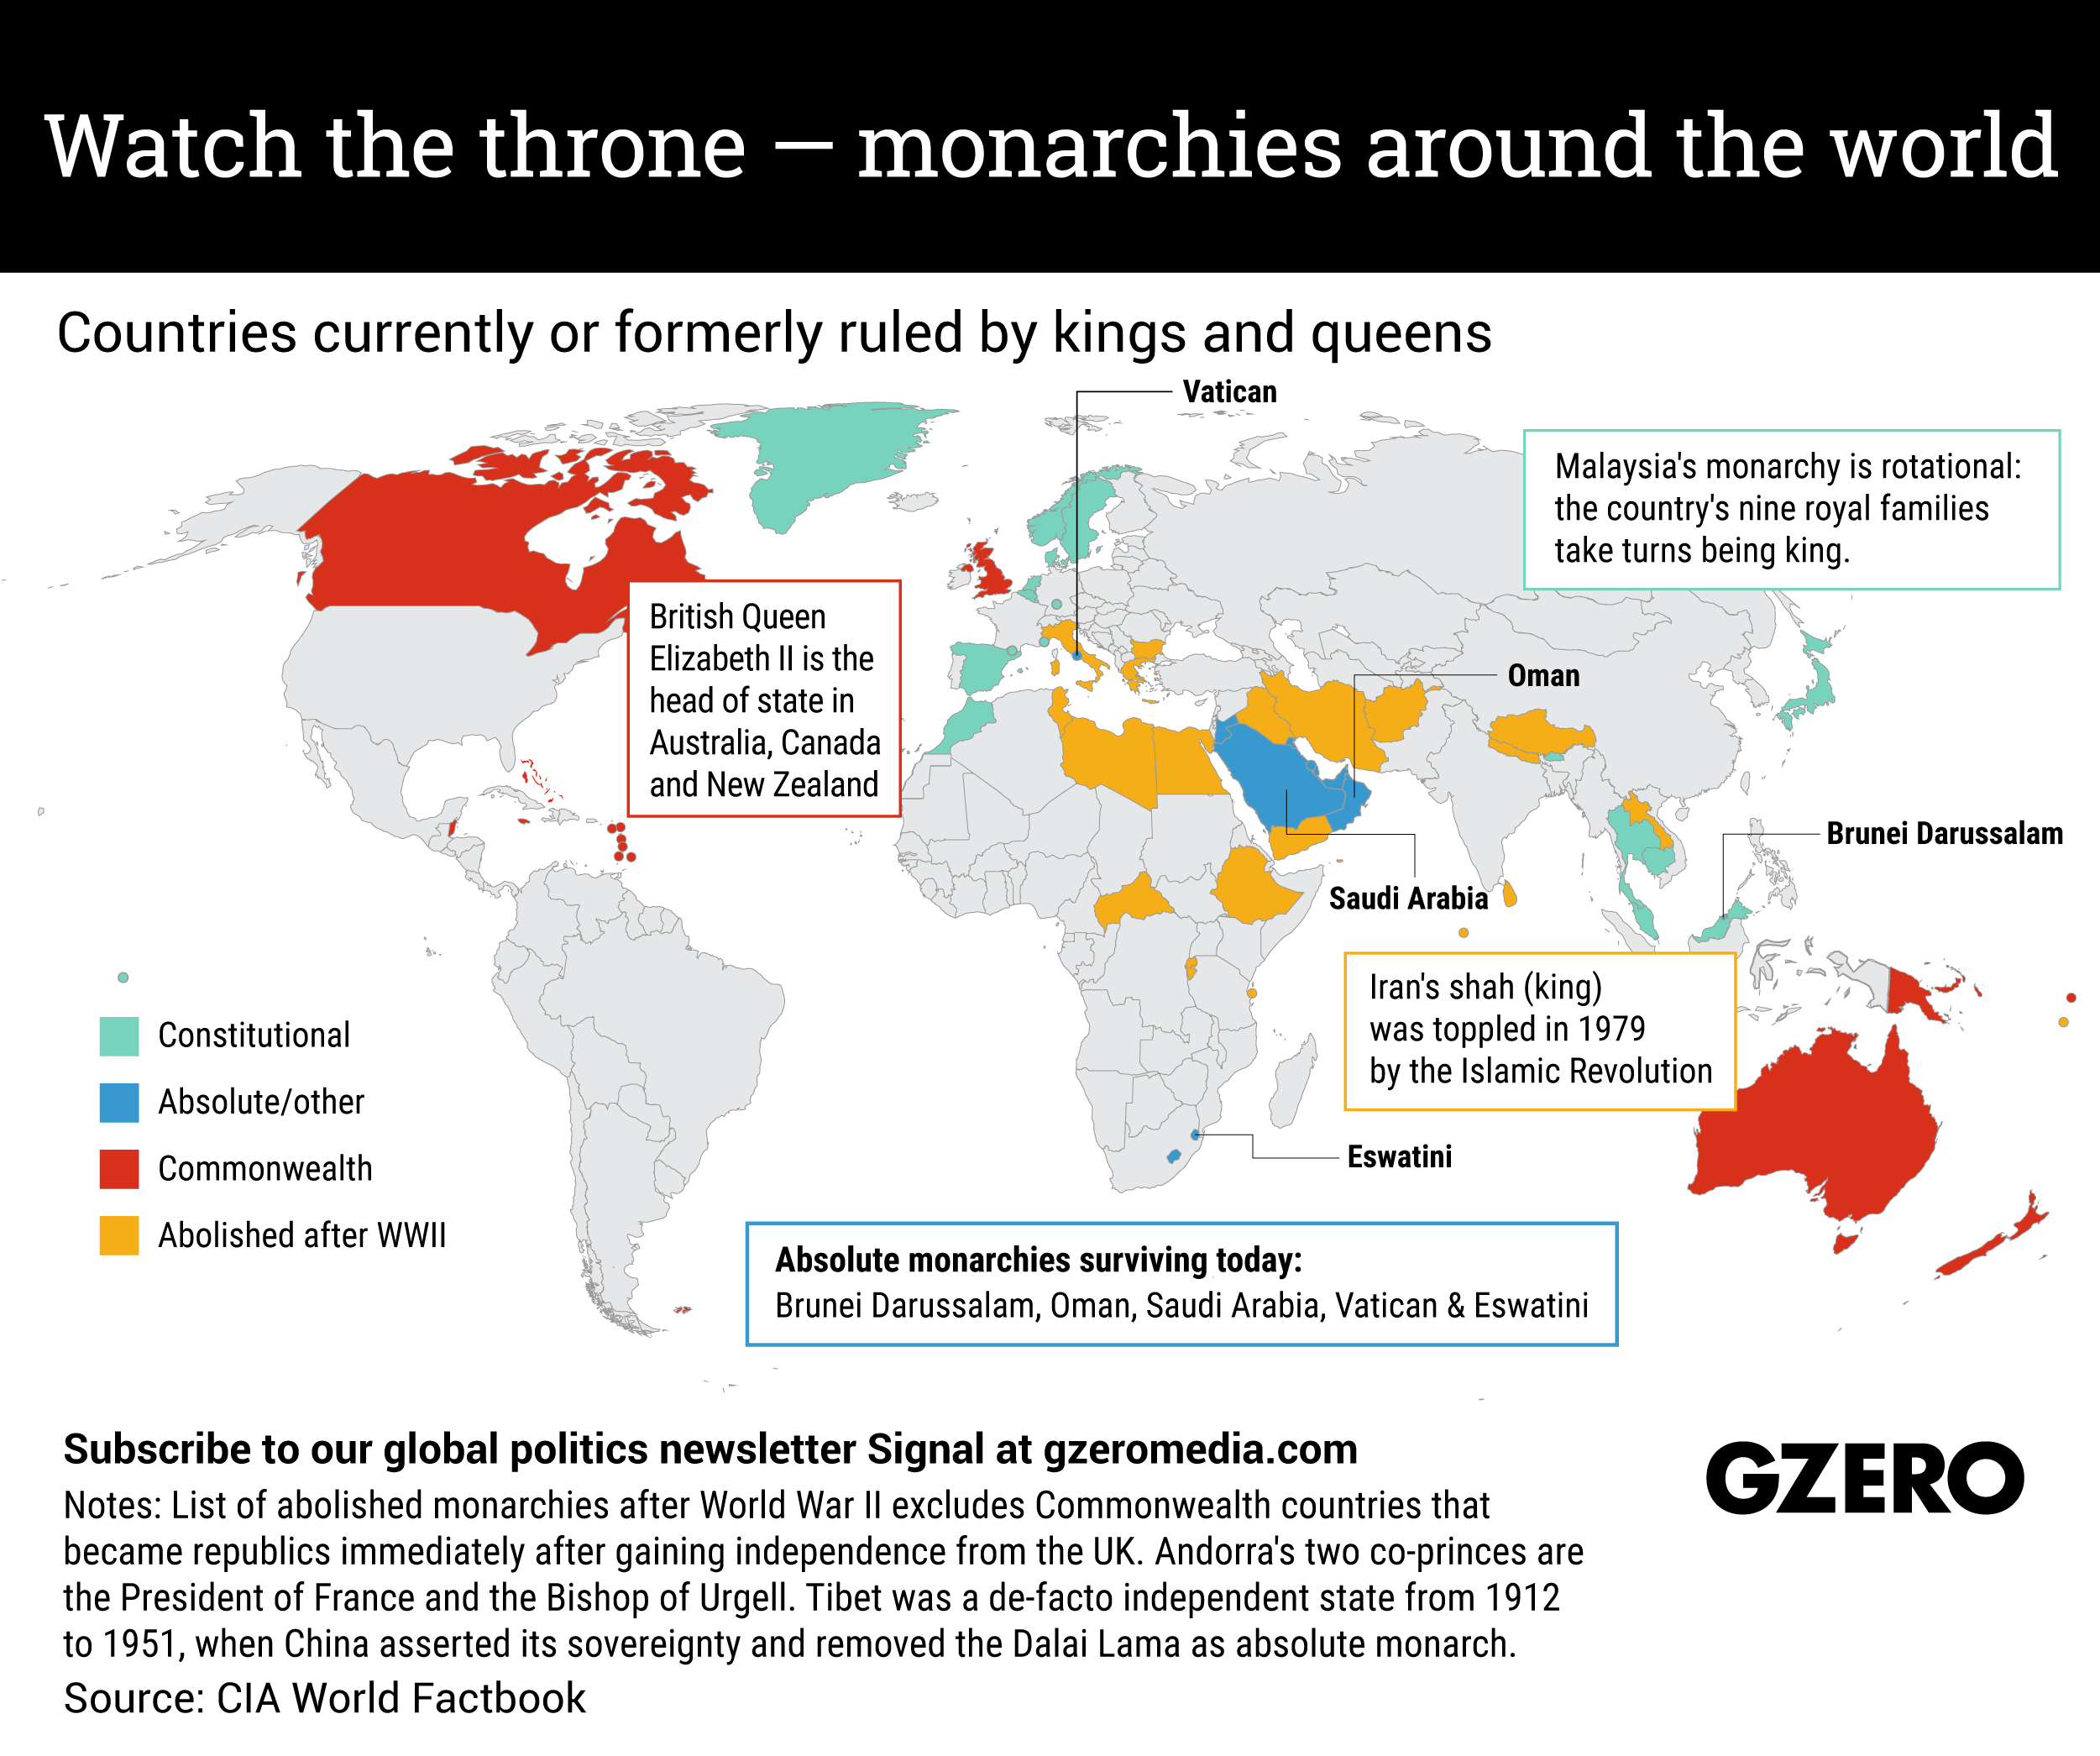 V. Monarchies in Asia 